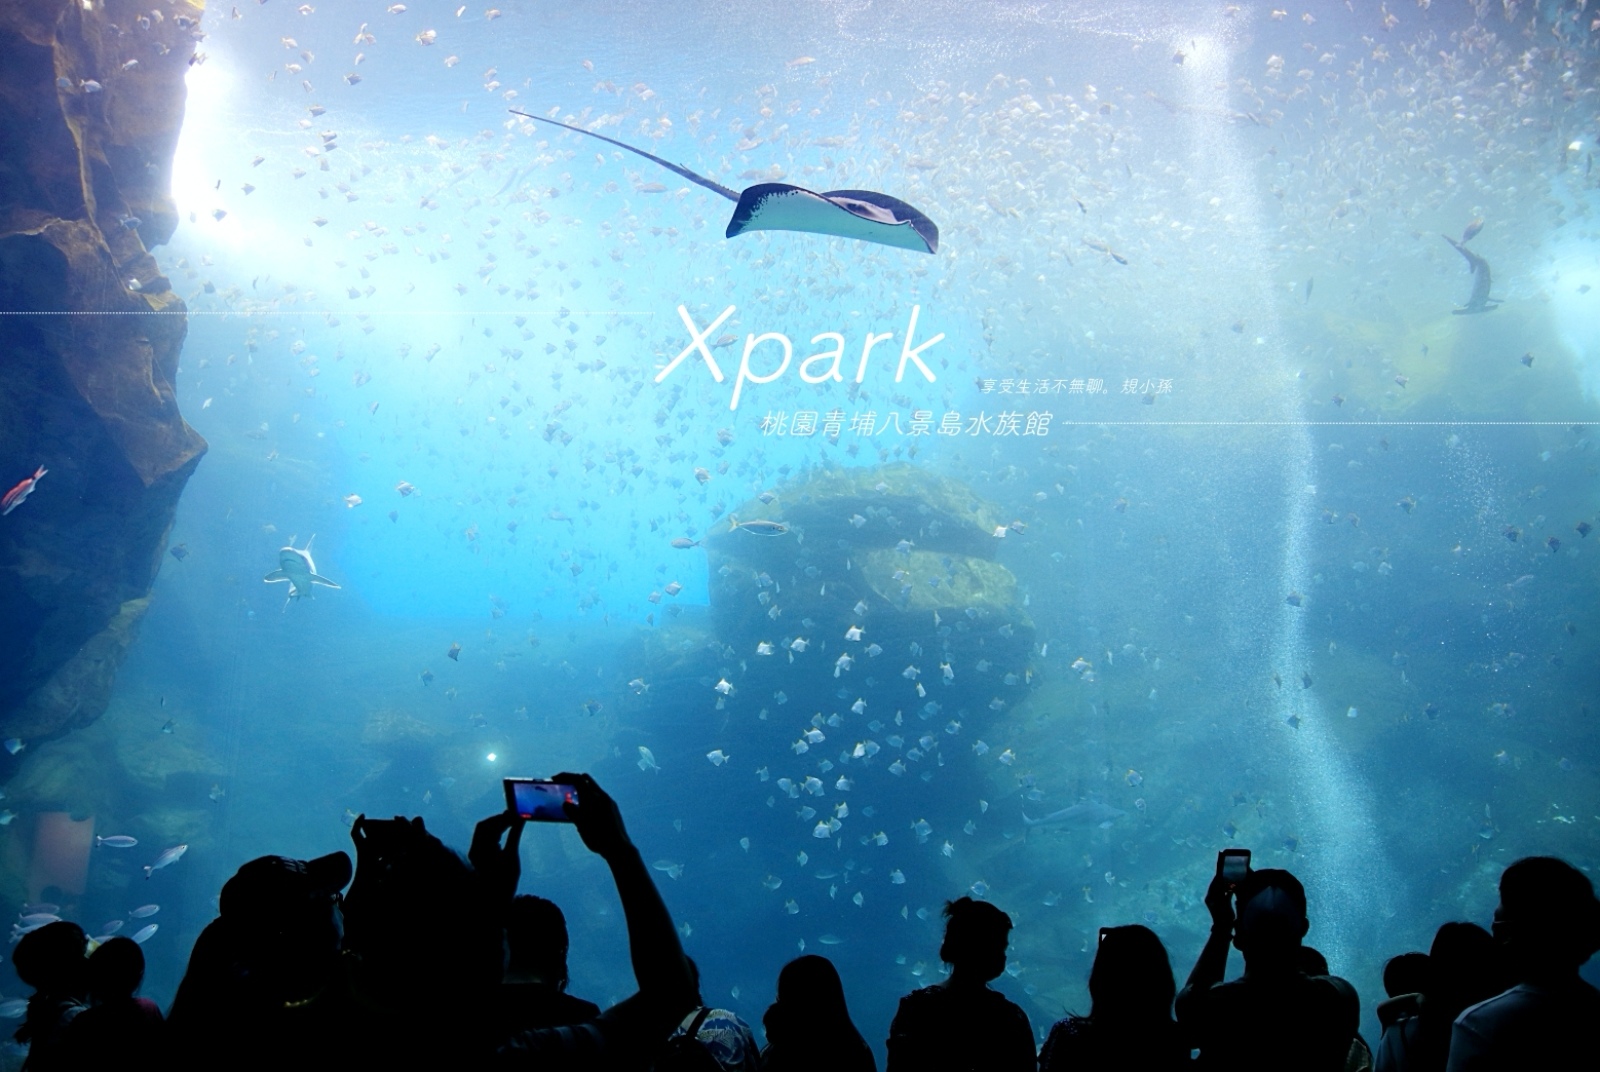 桃園 Xpark 水族館：搭高鐵怎麼走最近？線上購票先買最方便！６大 IG 必拍熱門打卡點一次收，附現場實錄影片。